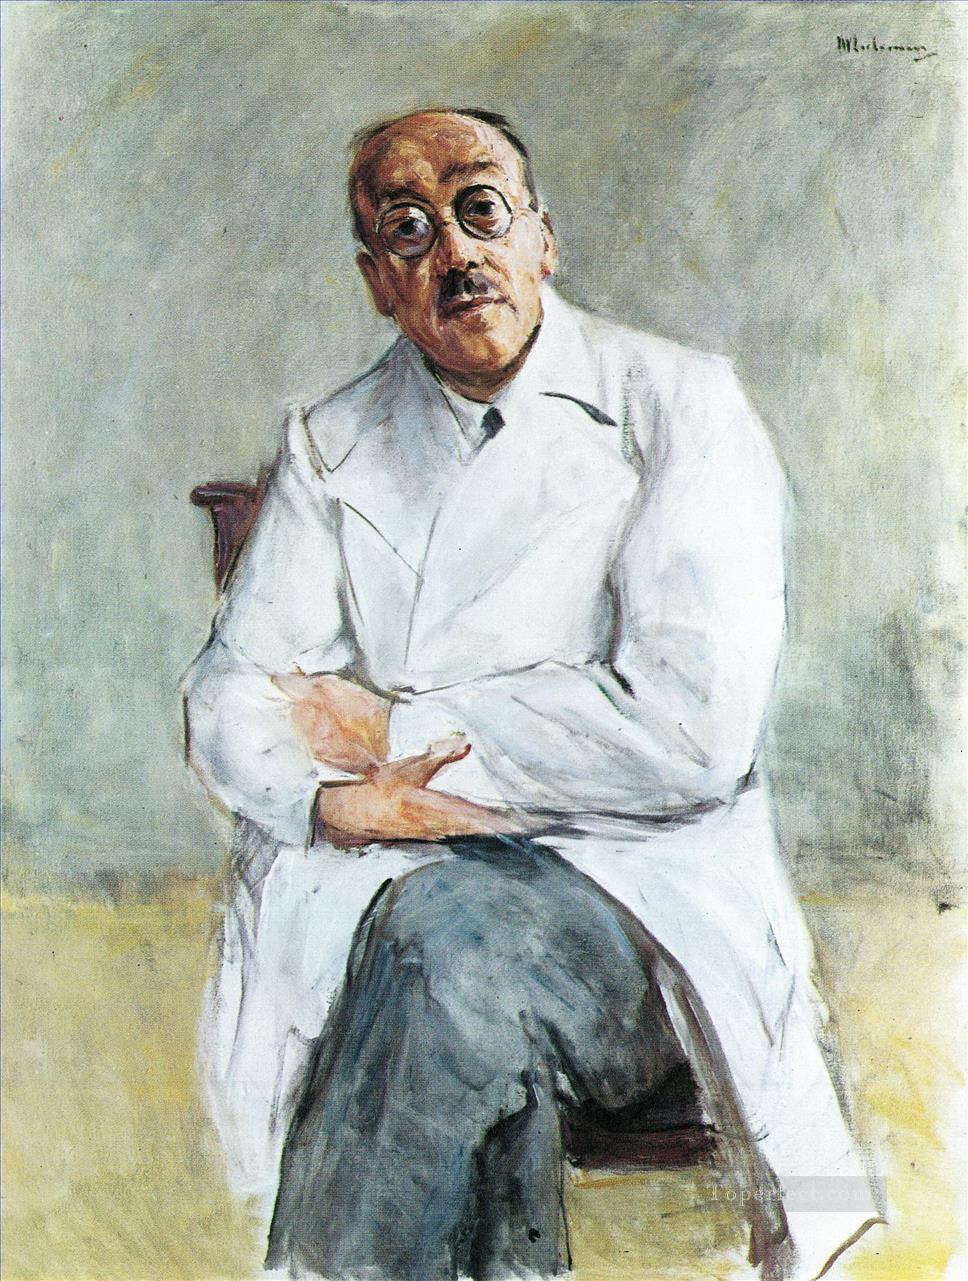 外科医フェルディナンド・ザウアーブルッフ 1932 マックス・リーバーマン ドイツ印象派油絵